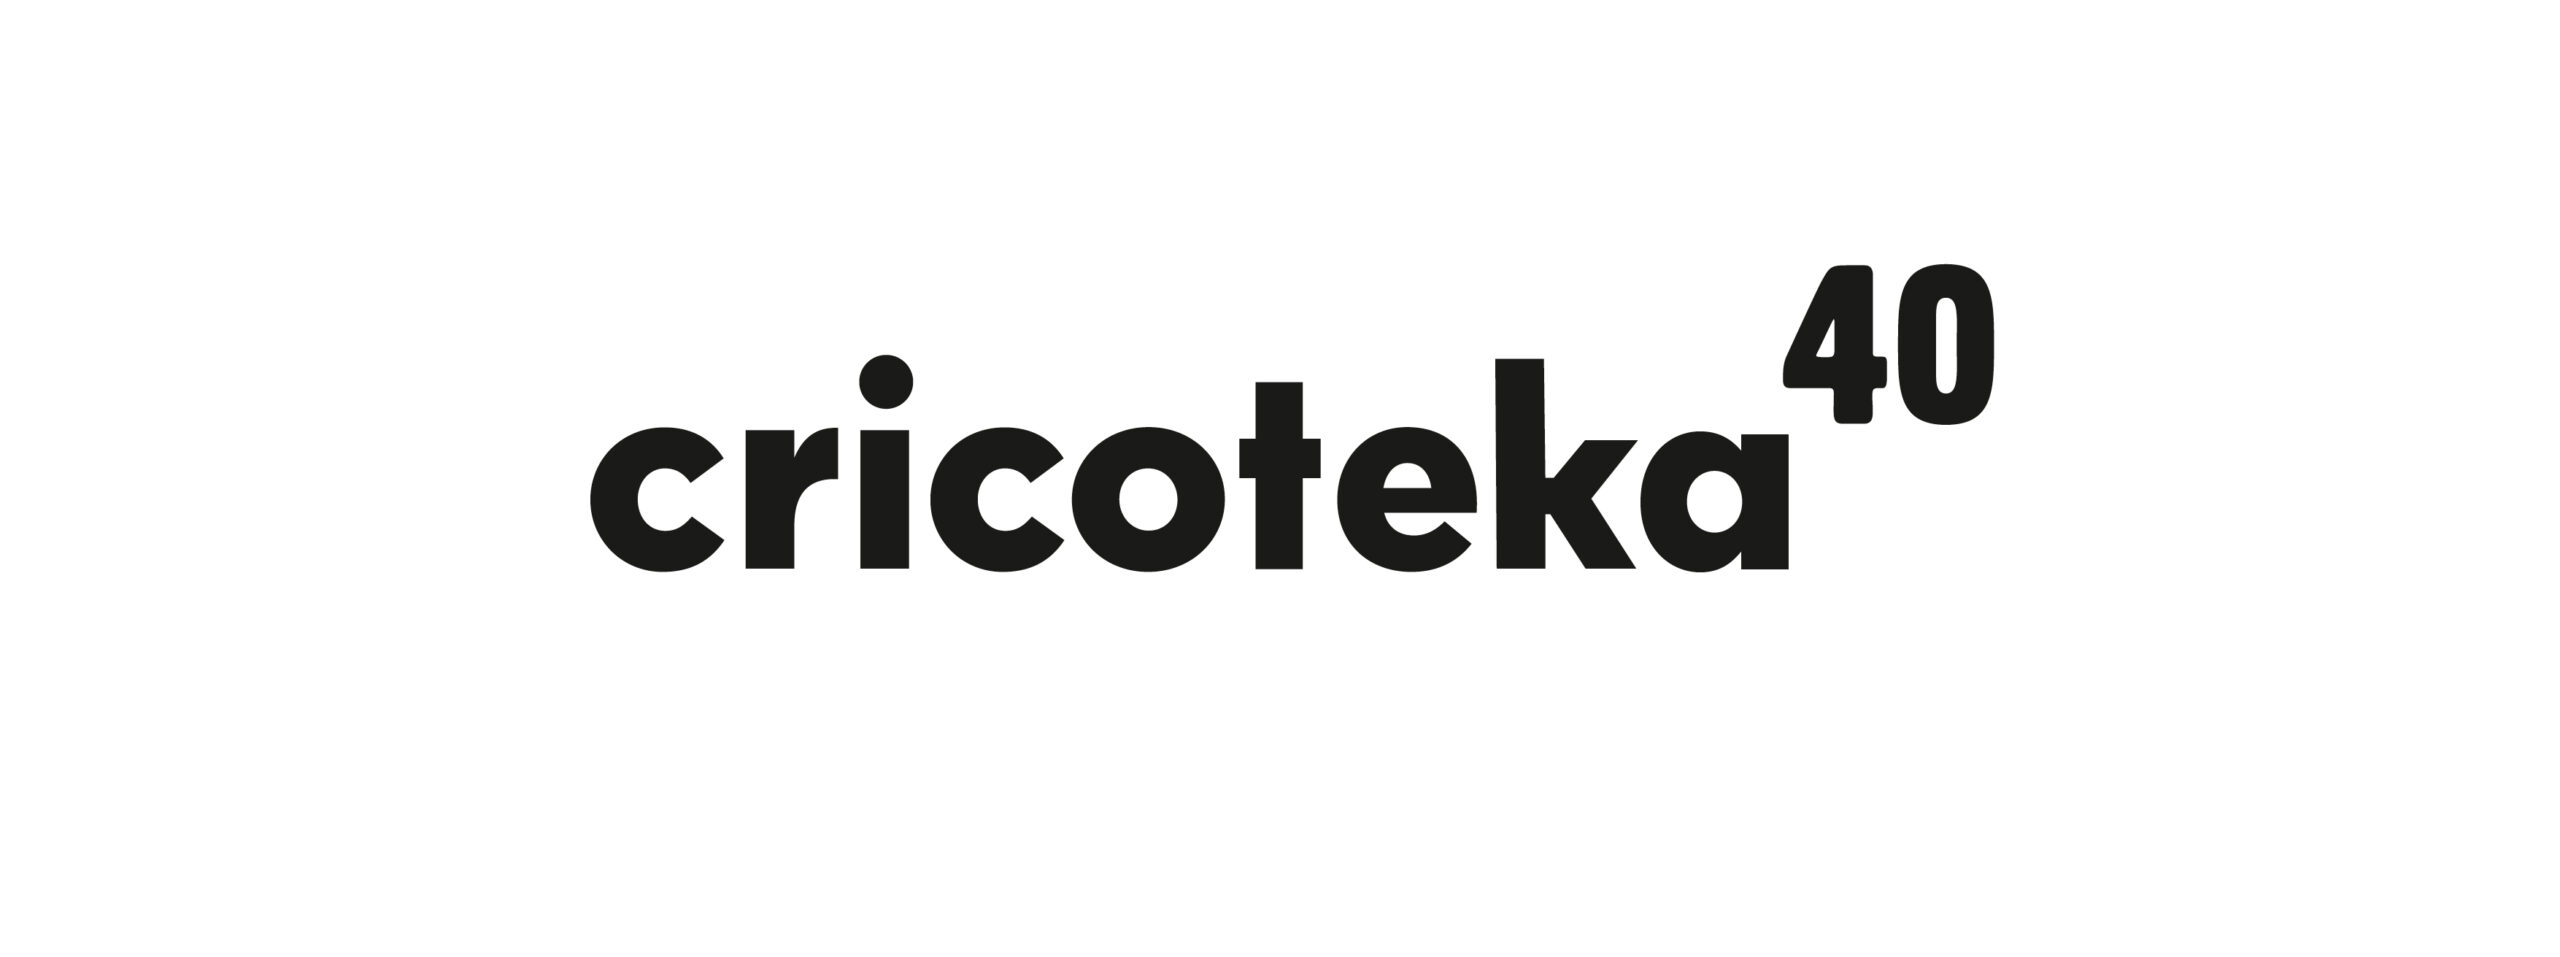 Logotyp: czarny napis Cricoteka 40 na białym tle